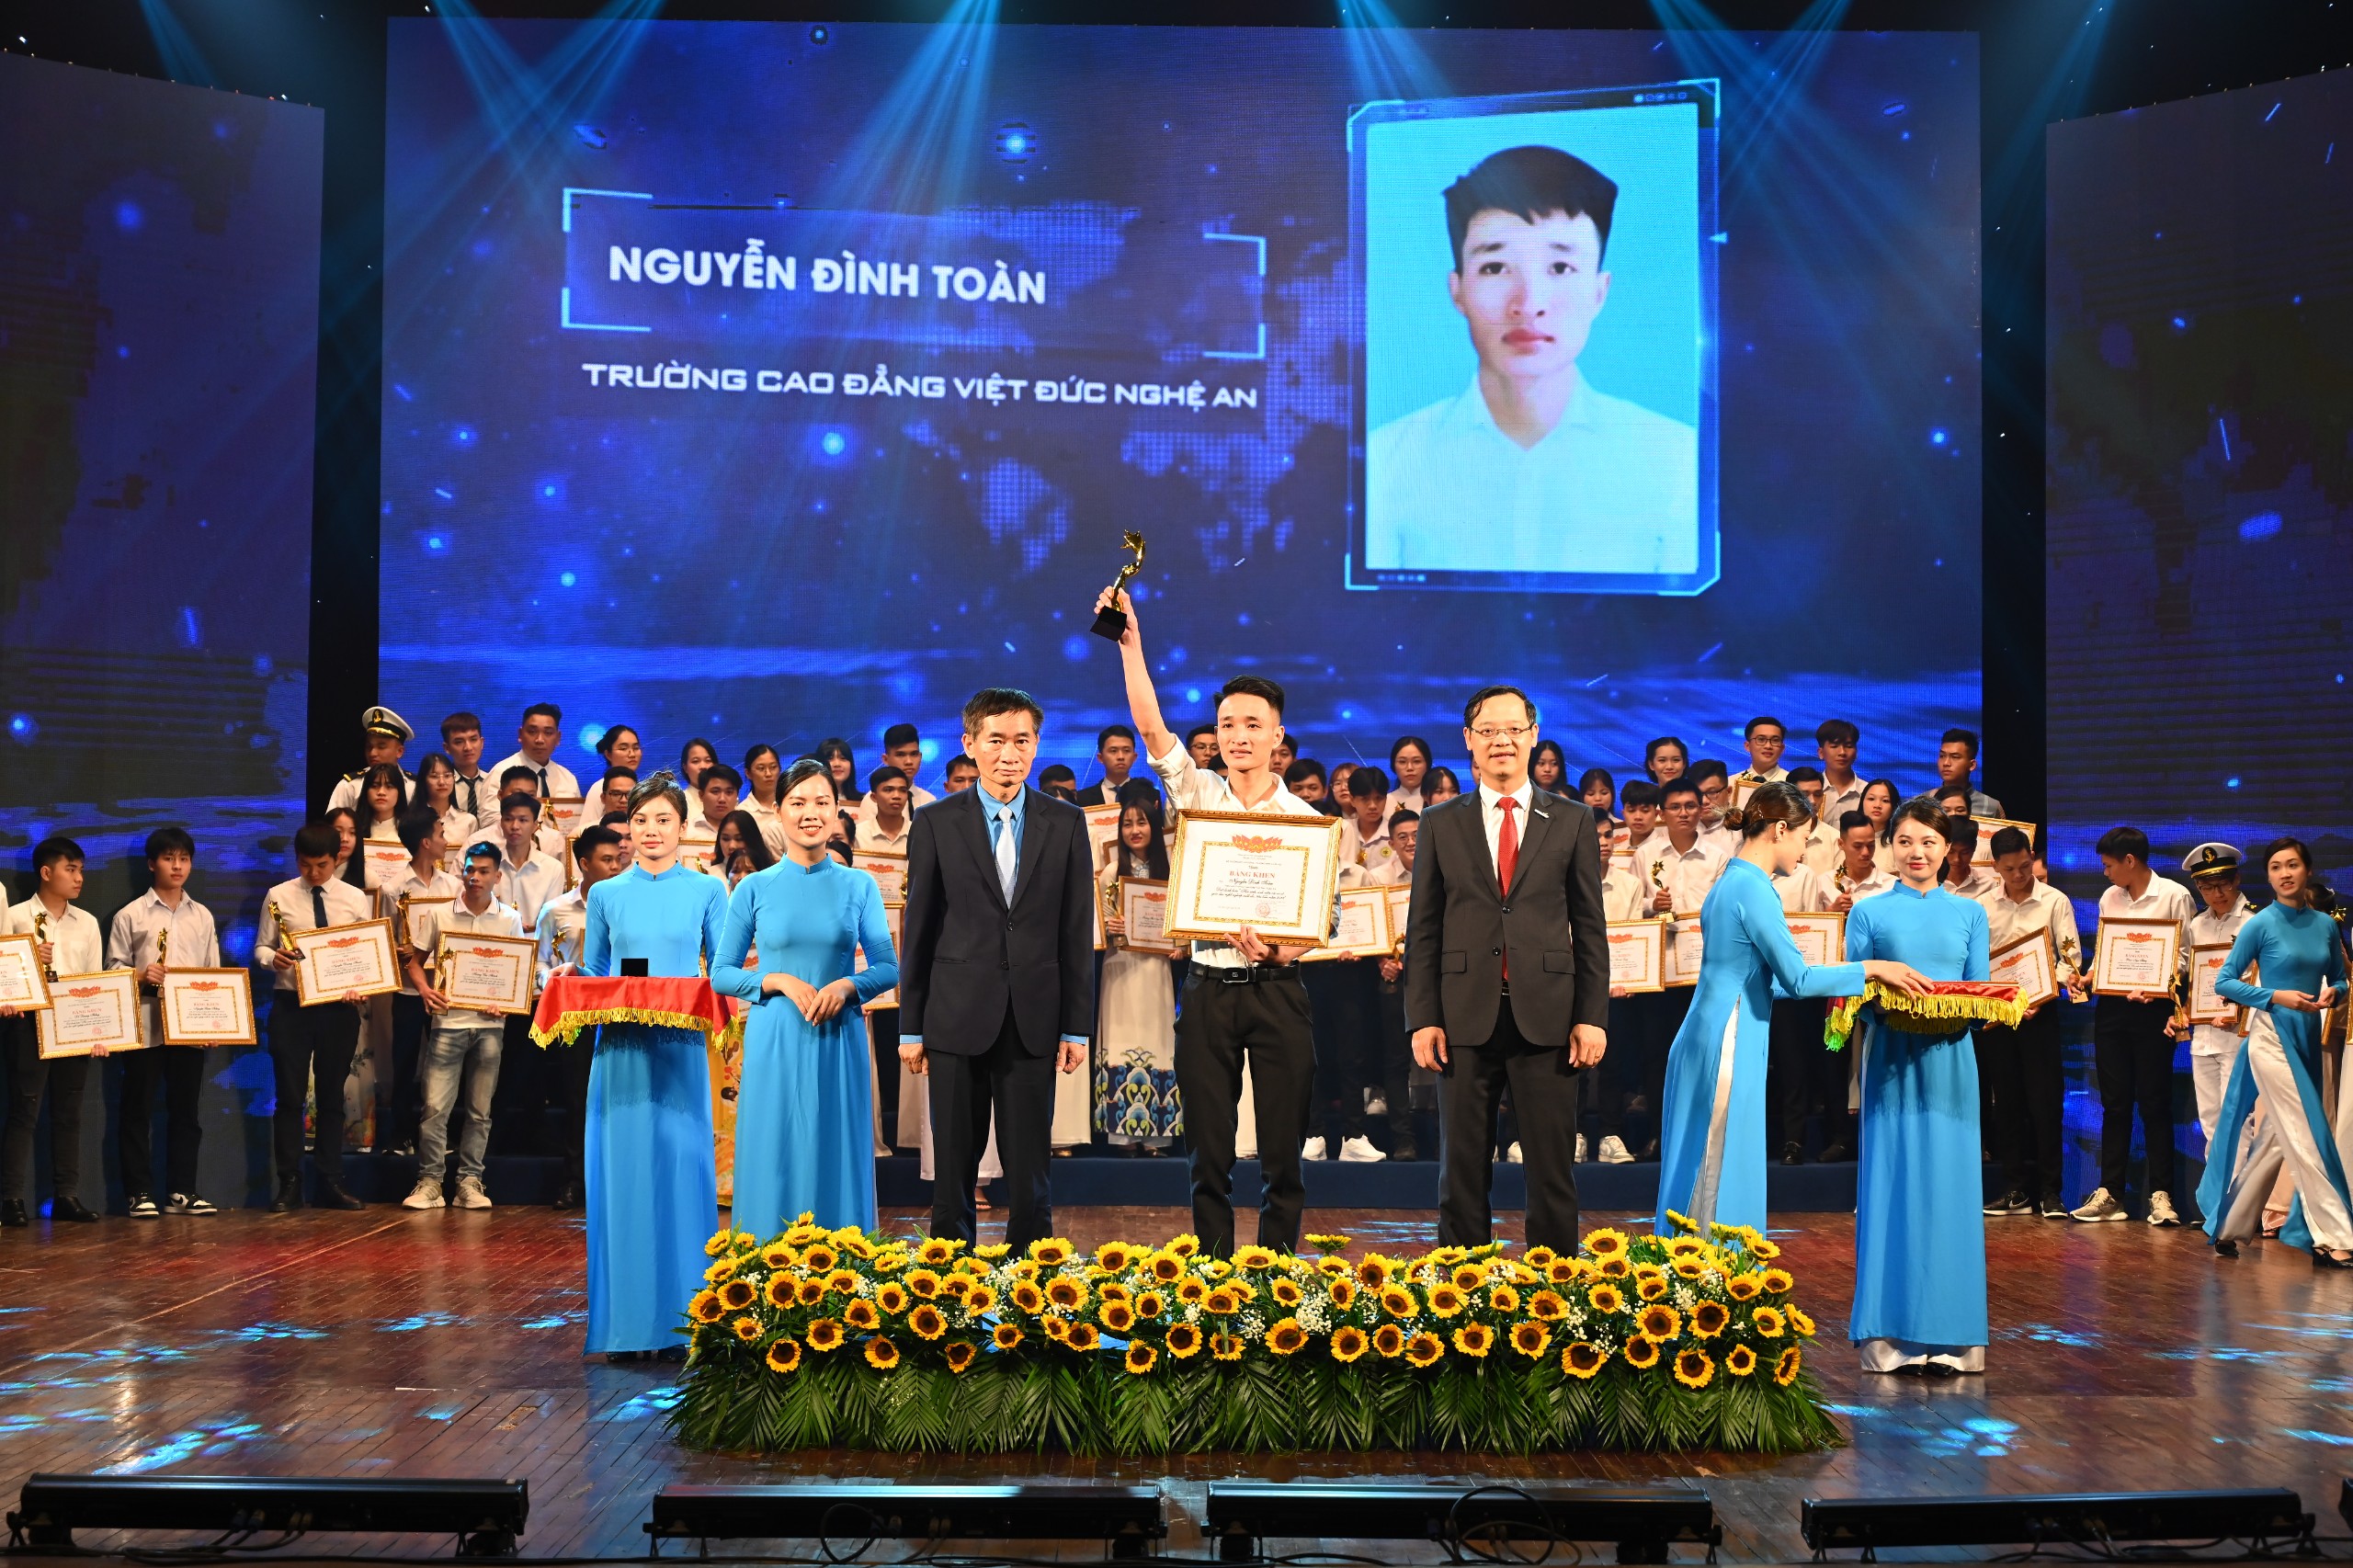 Sinh viên Trường Cao đẳng Việt – Đức Nghệ An được tuyên dương sinh viên giáo dục nghề nghiệp xuất sắc năm 2022